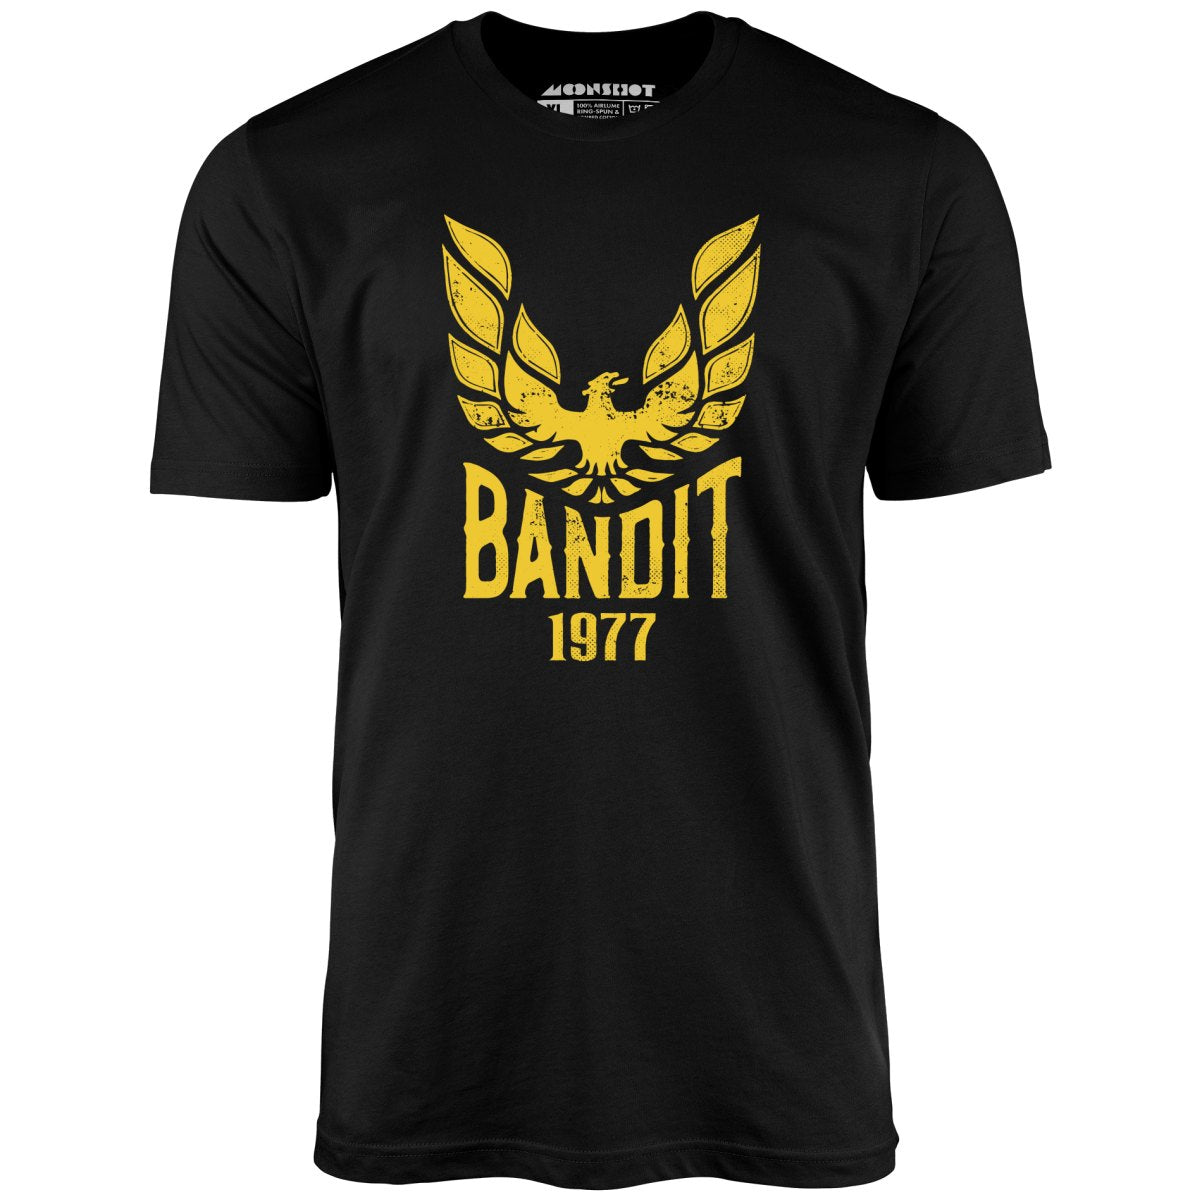 Bandit 1977 - Unisex T-Shirt